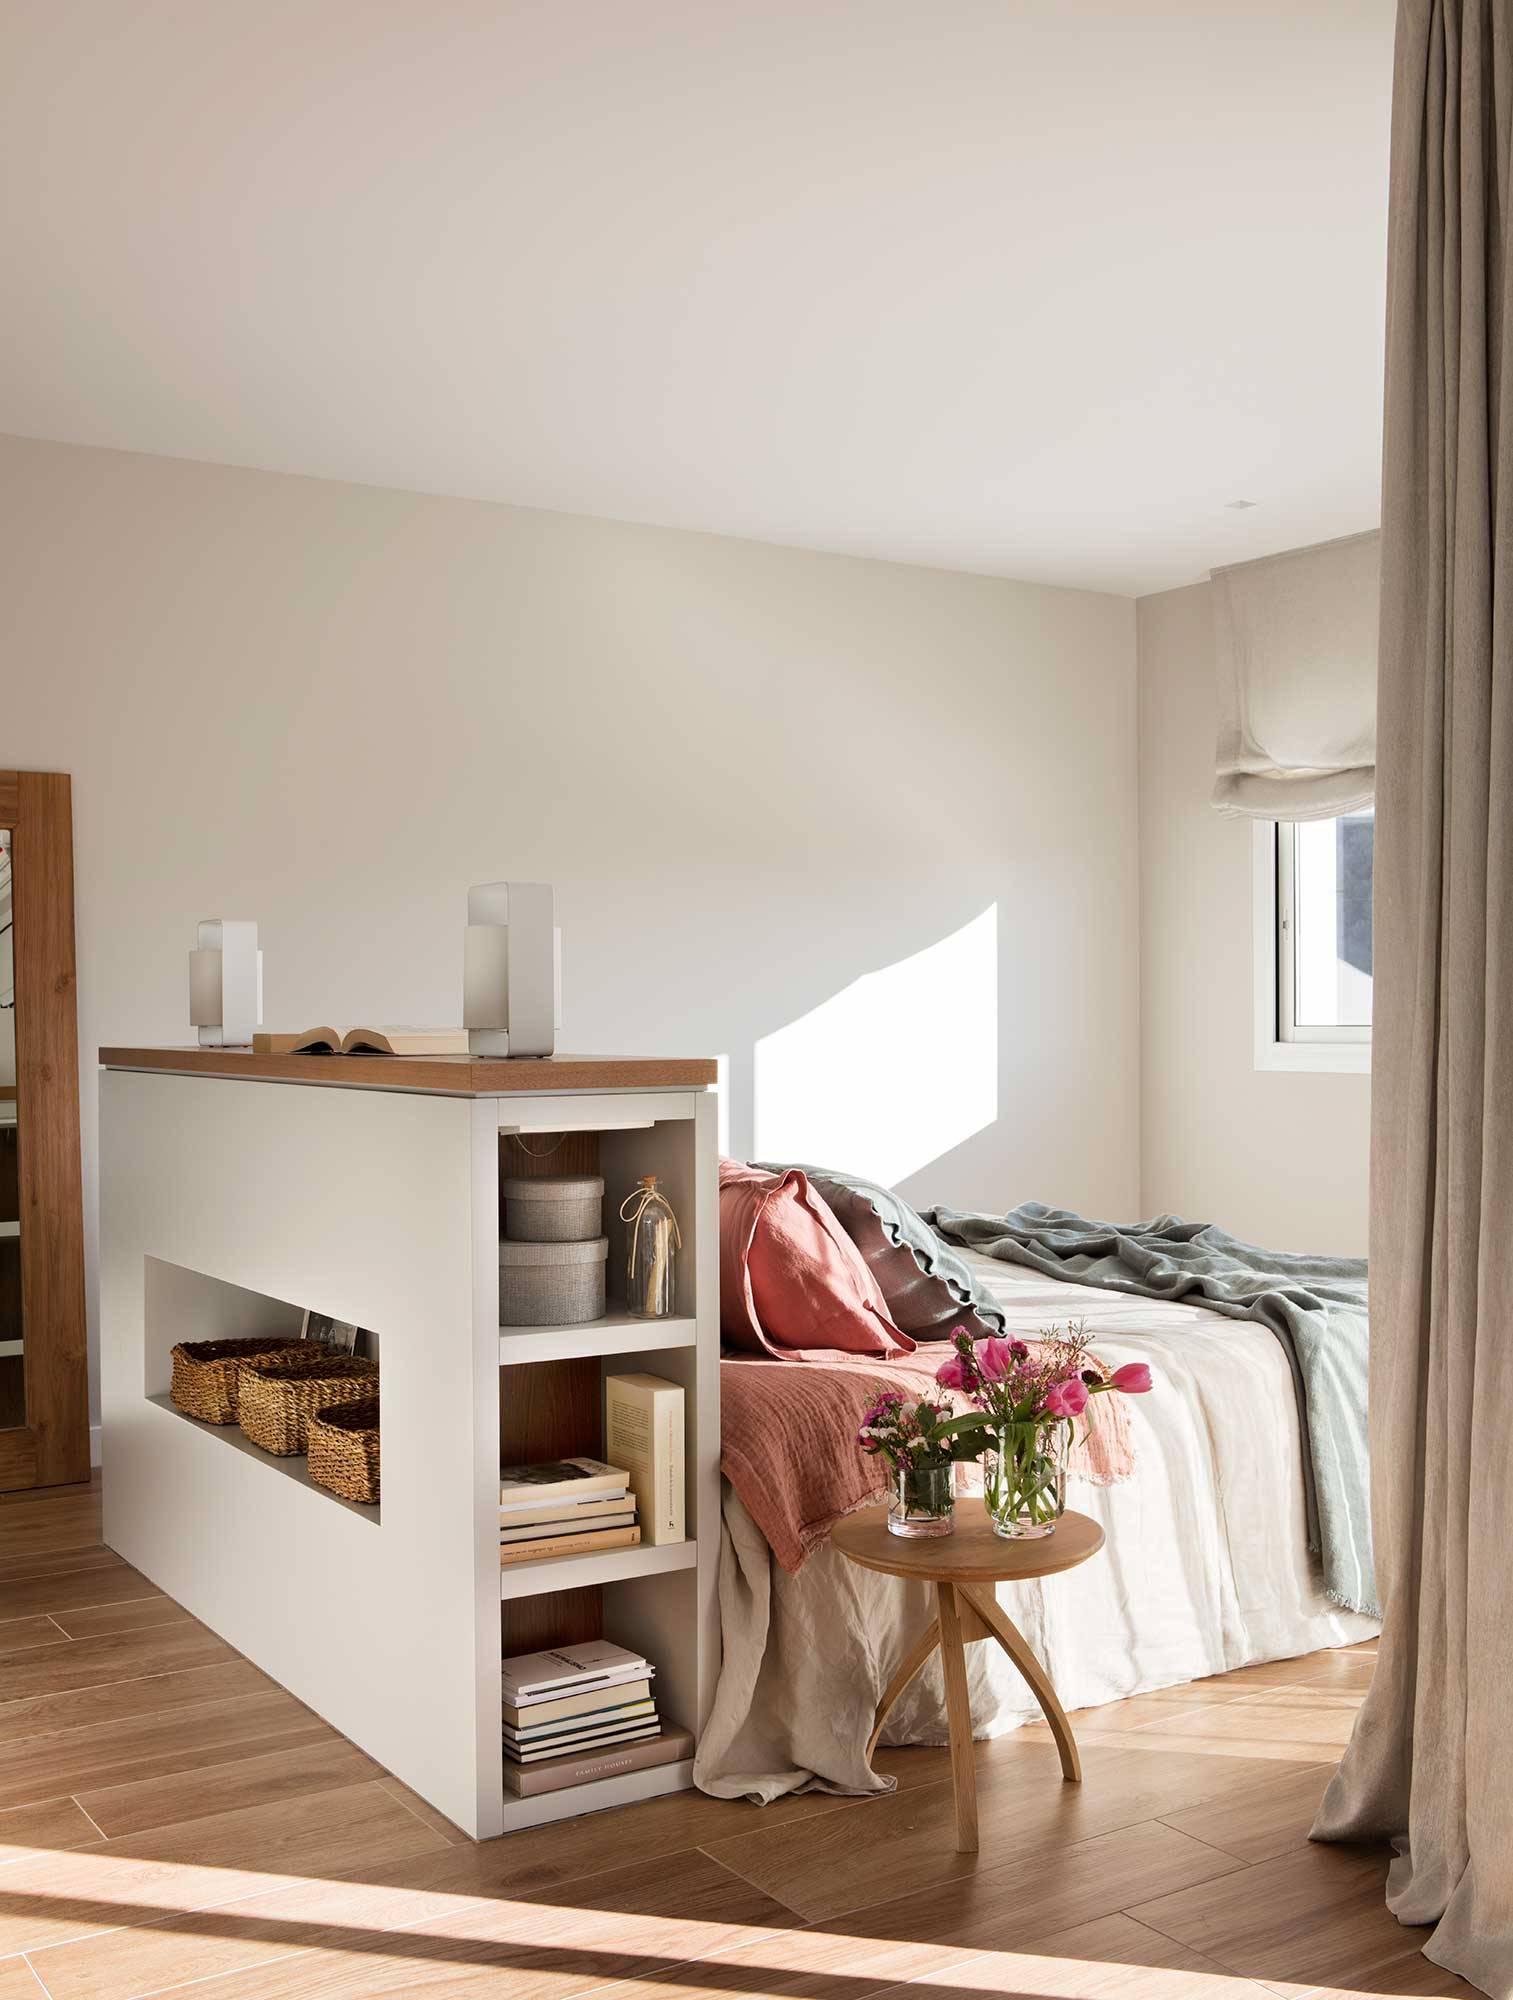 Dormitorio con cama en medio y cabecero con armarios, librería y hornacina para guardar00480630 O